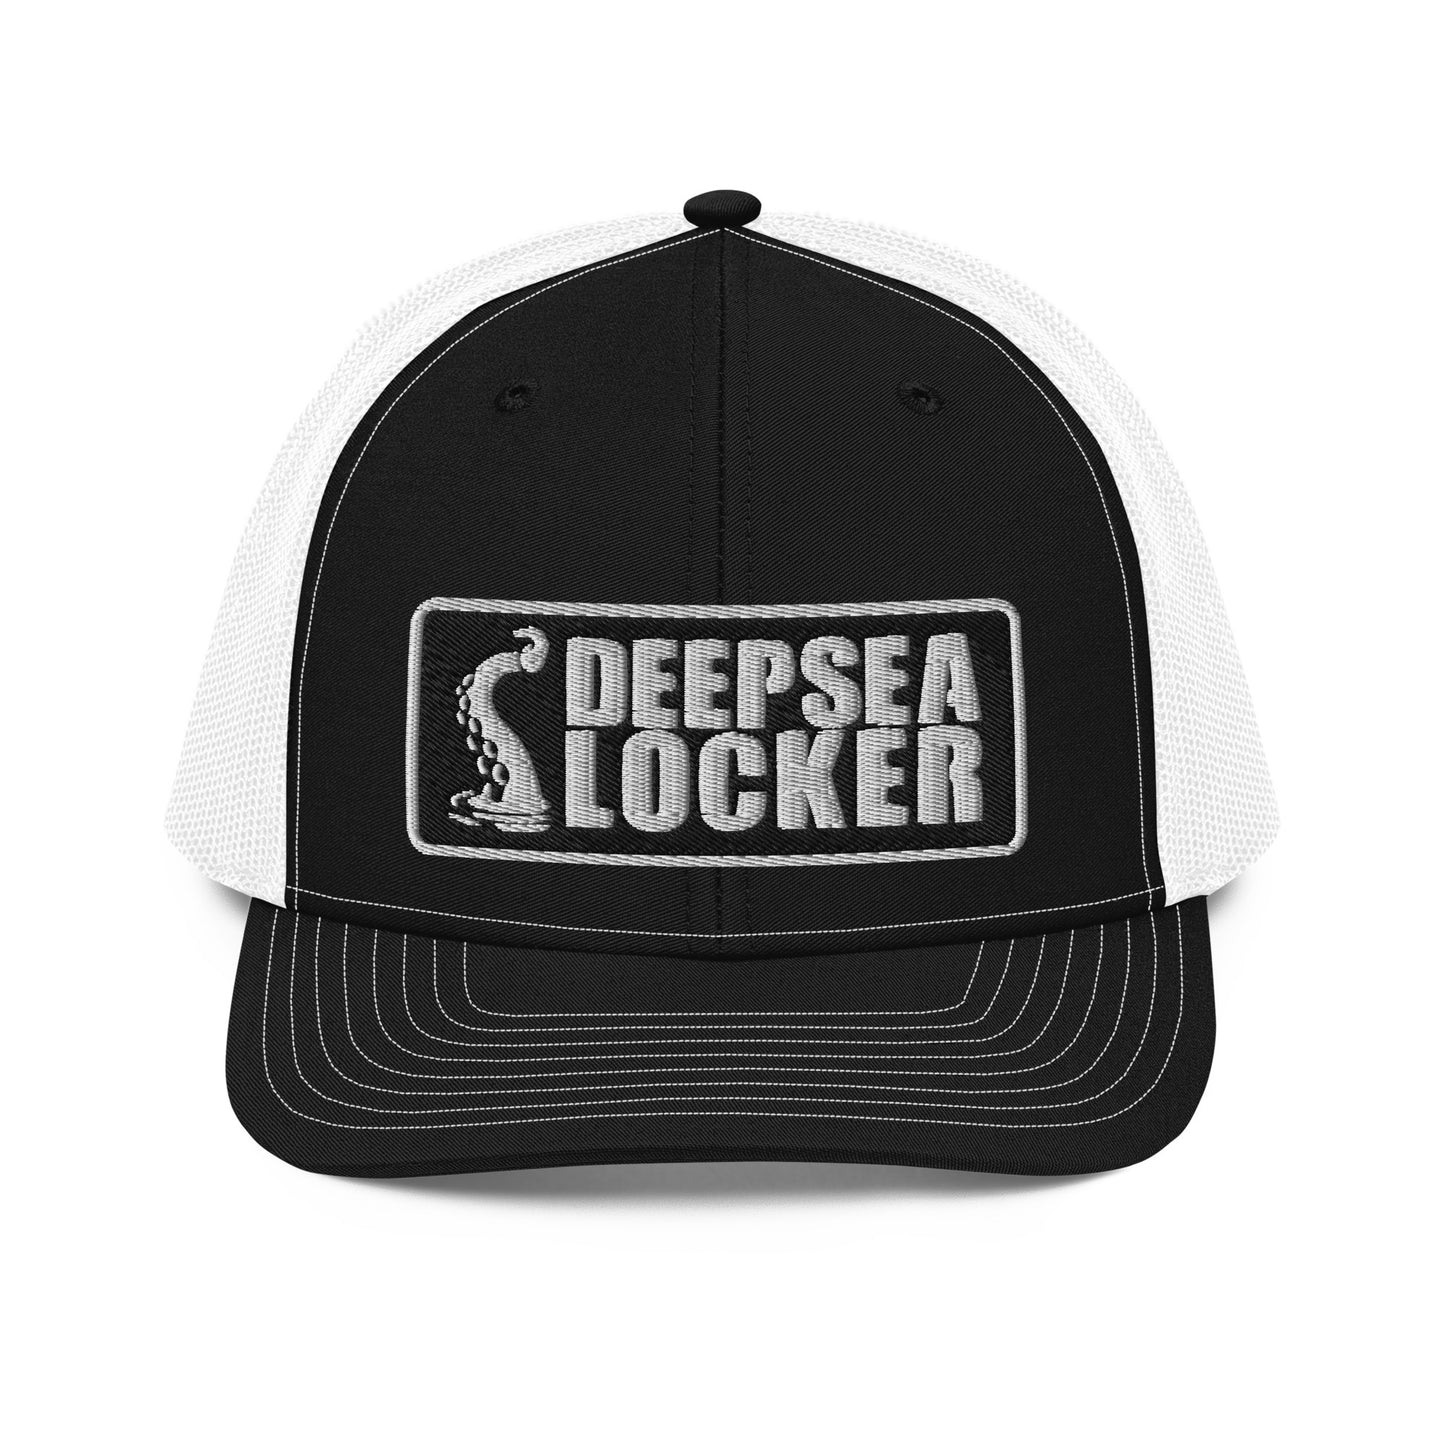 DeepSea Locker Trucker Cap